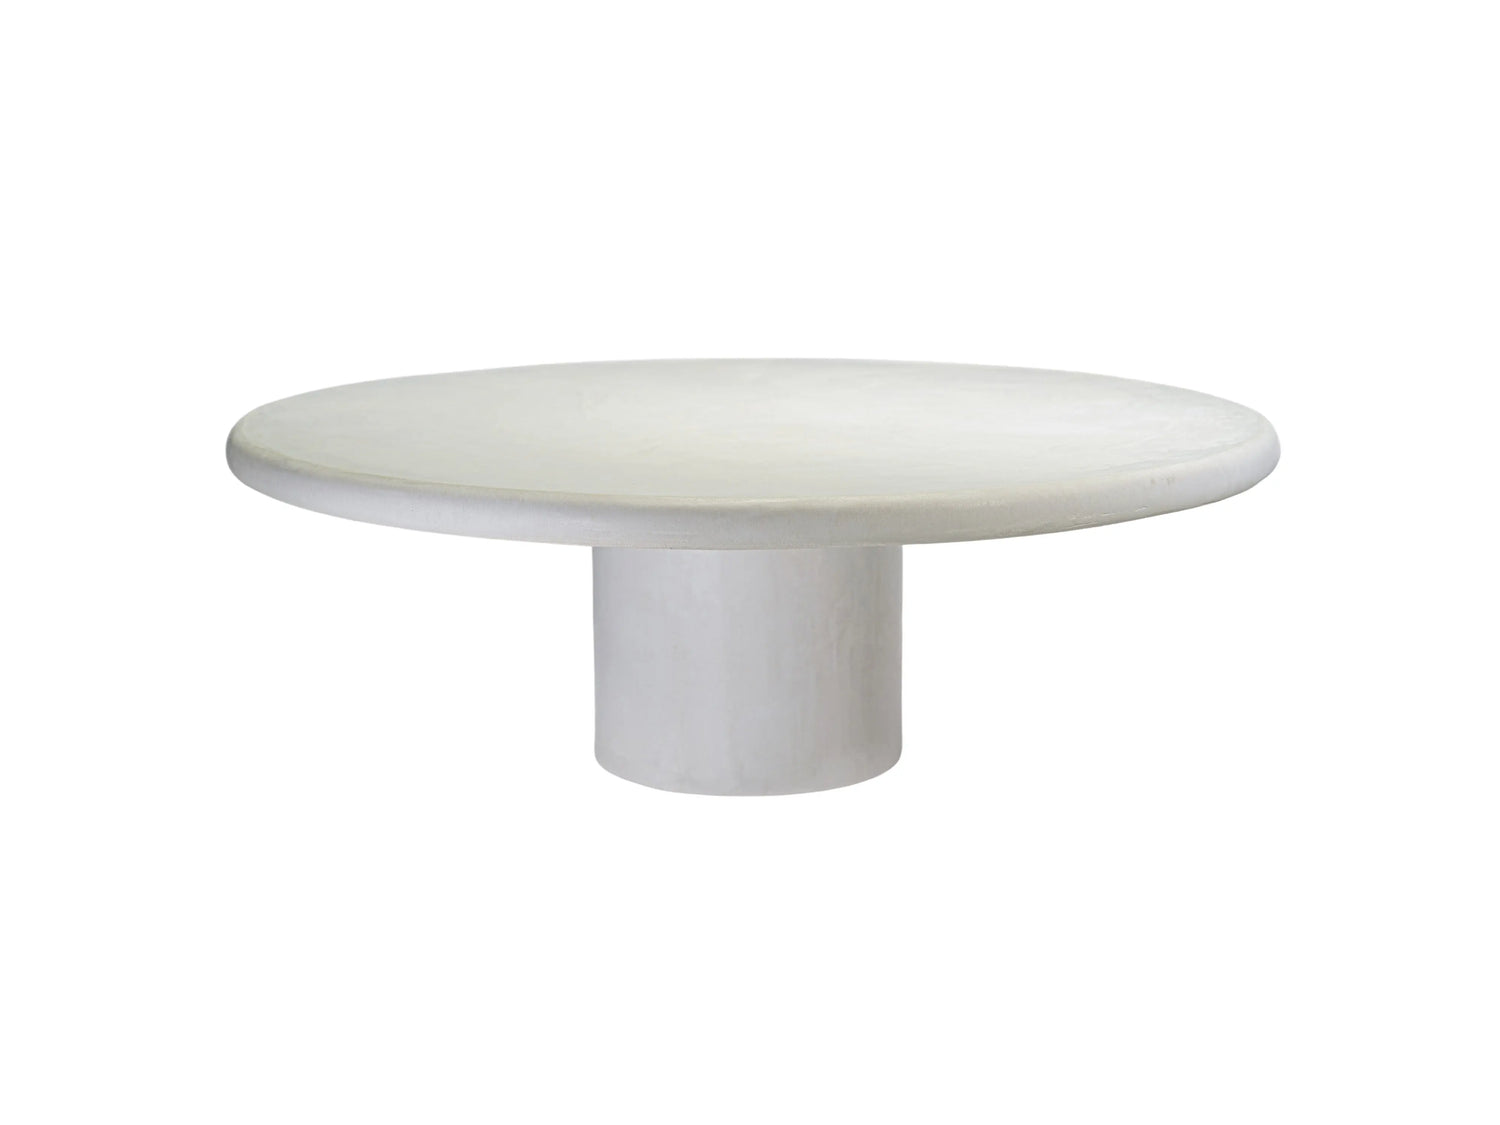 Table basse en béton ciré MORTEX® Mia - The Concrete Table Co.